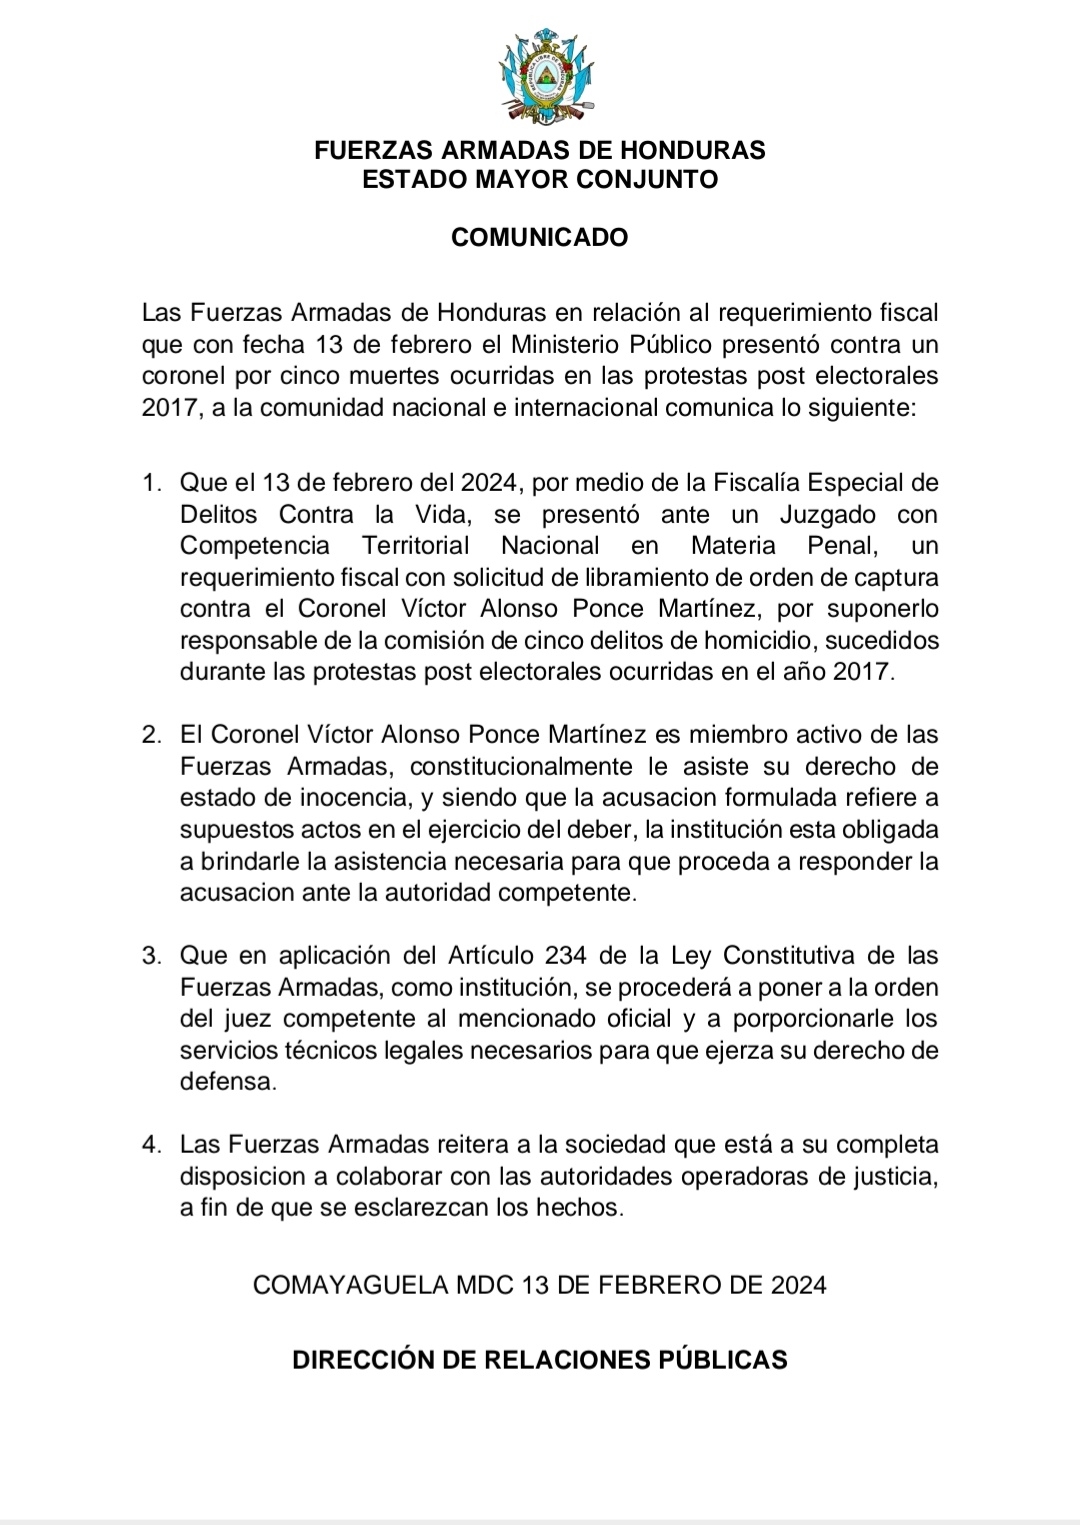 FFAA se pronuncia ante el requerimiento fiscal contra Coronel Victor Ponce, por cinco muertes ocurridas en protestas electorales 2017.